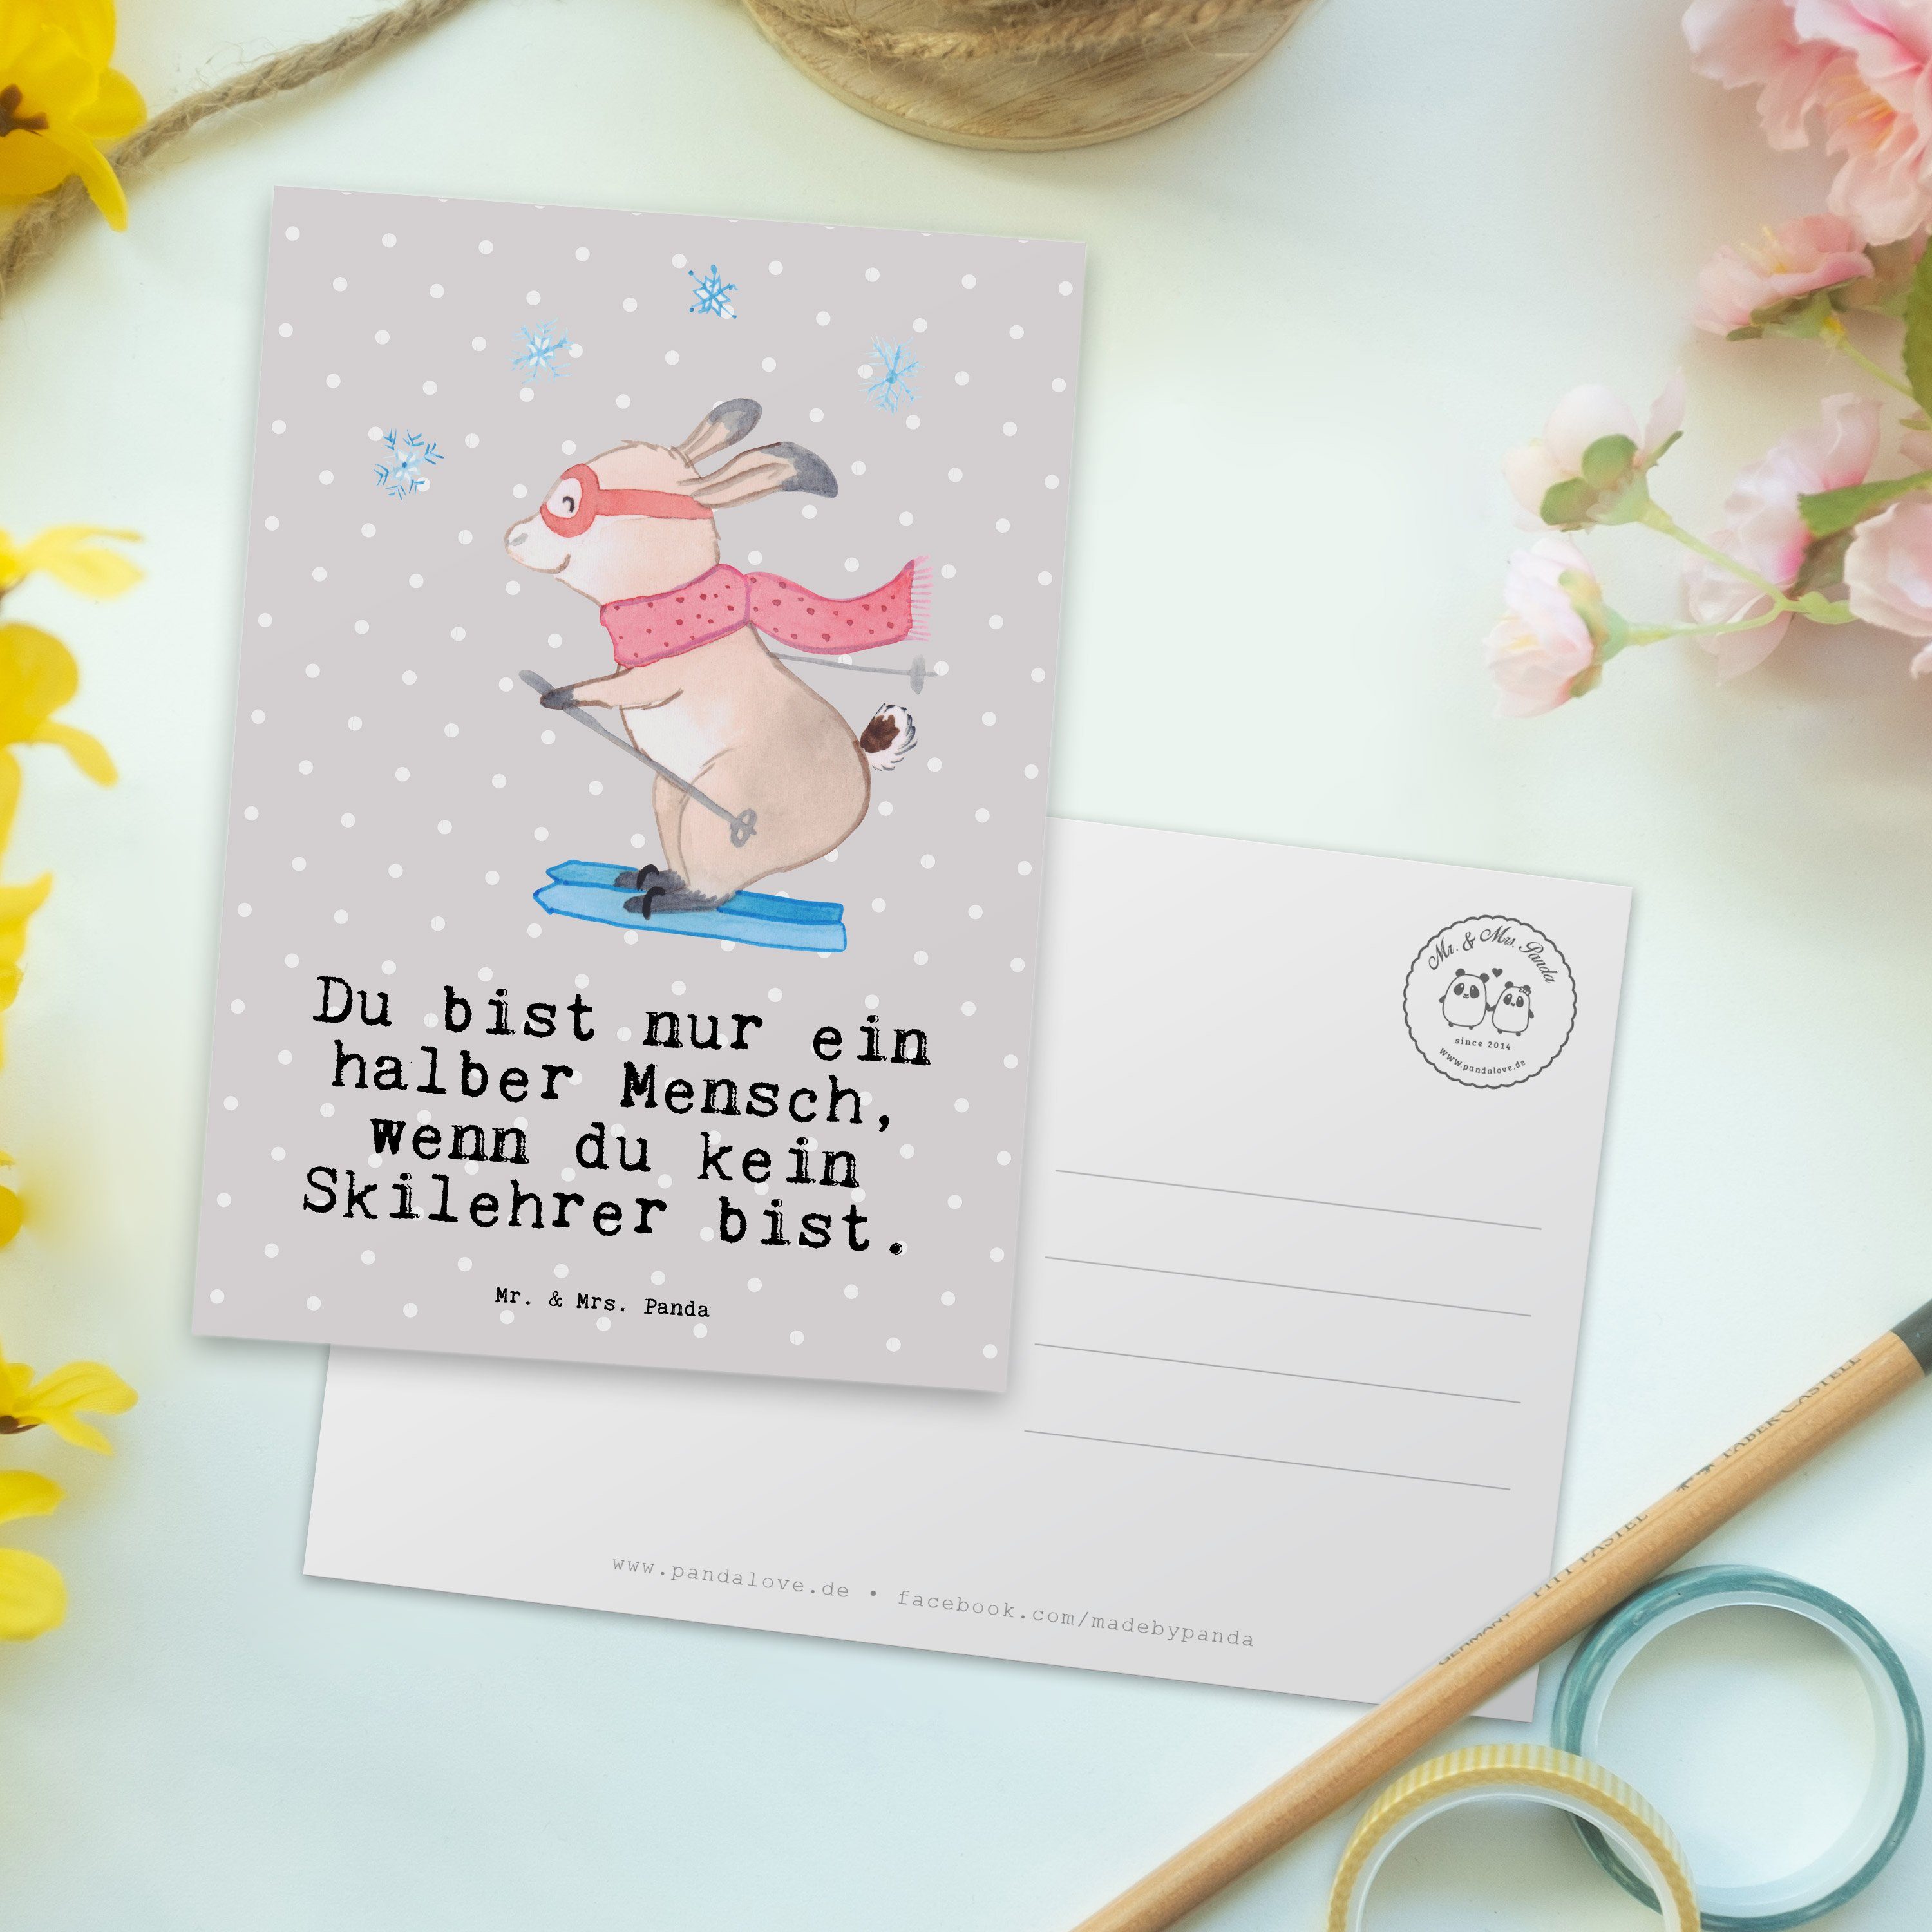 Pastell Mrs. & Panda Postkarte Ansich Grau Skilehrer mit Geschenk, - Einladungskarte, Herz - Mr.